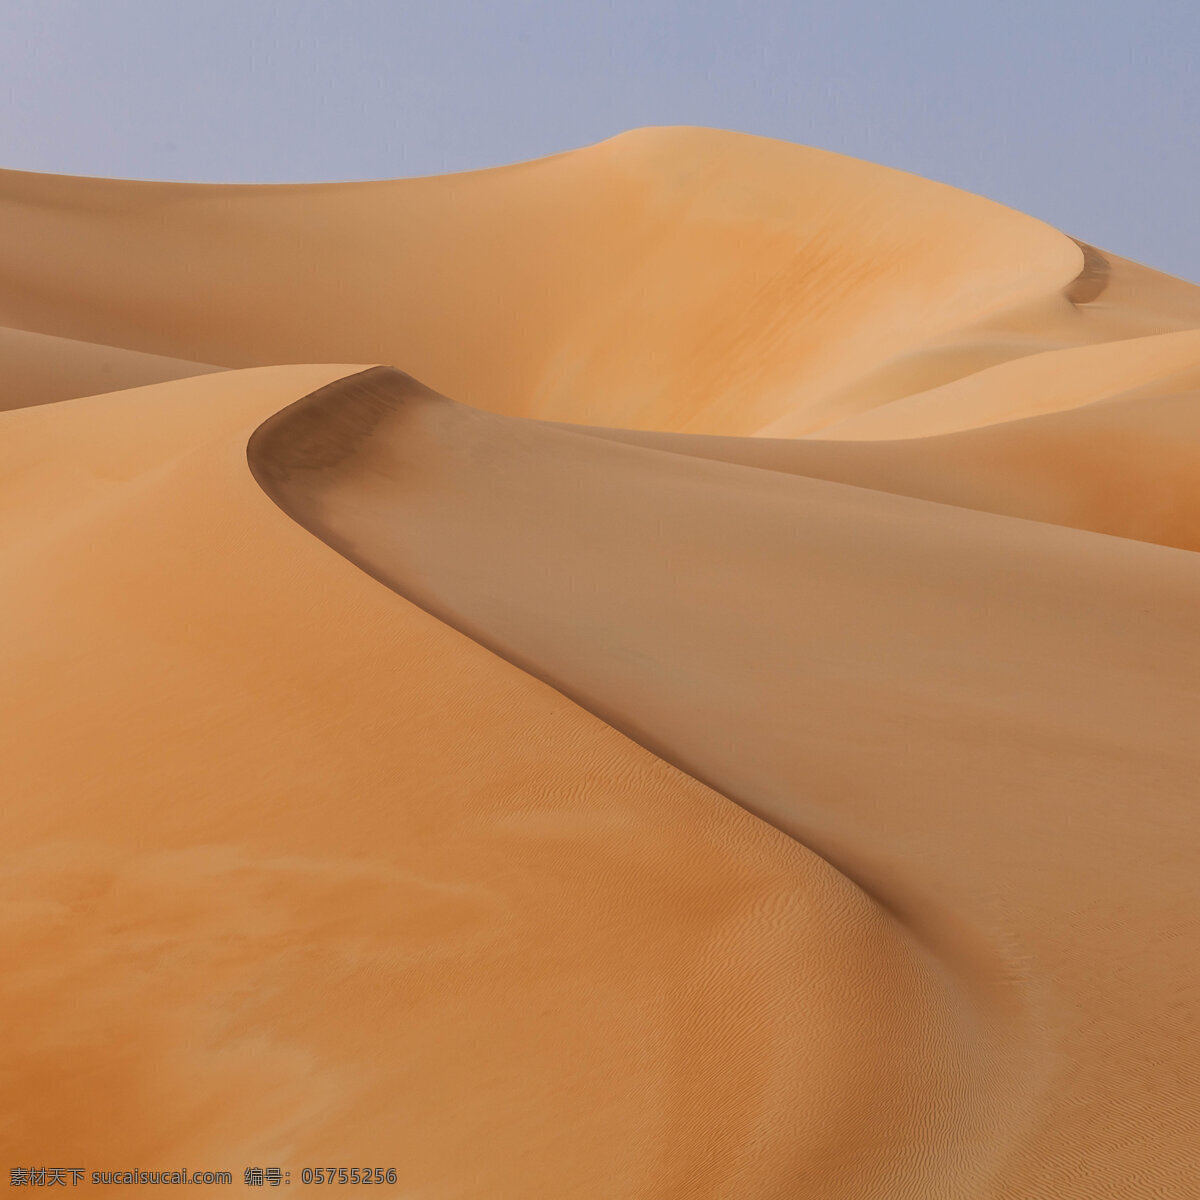 沙漠 沙丘 沙纹 沙漠植物 沙漠景观 沙漠风情 沙堆 黄沙 荒漠 荒沙 沙漠奇观 流动沙漠 沙子 沙漠风光 沙漠沙丘 沙漠风景 沙漠旅游 沙漠沙山 宁夏沙漠 戈壁滩 自然景观 自然风景